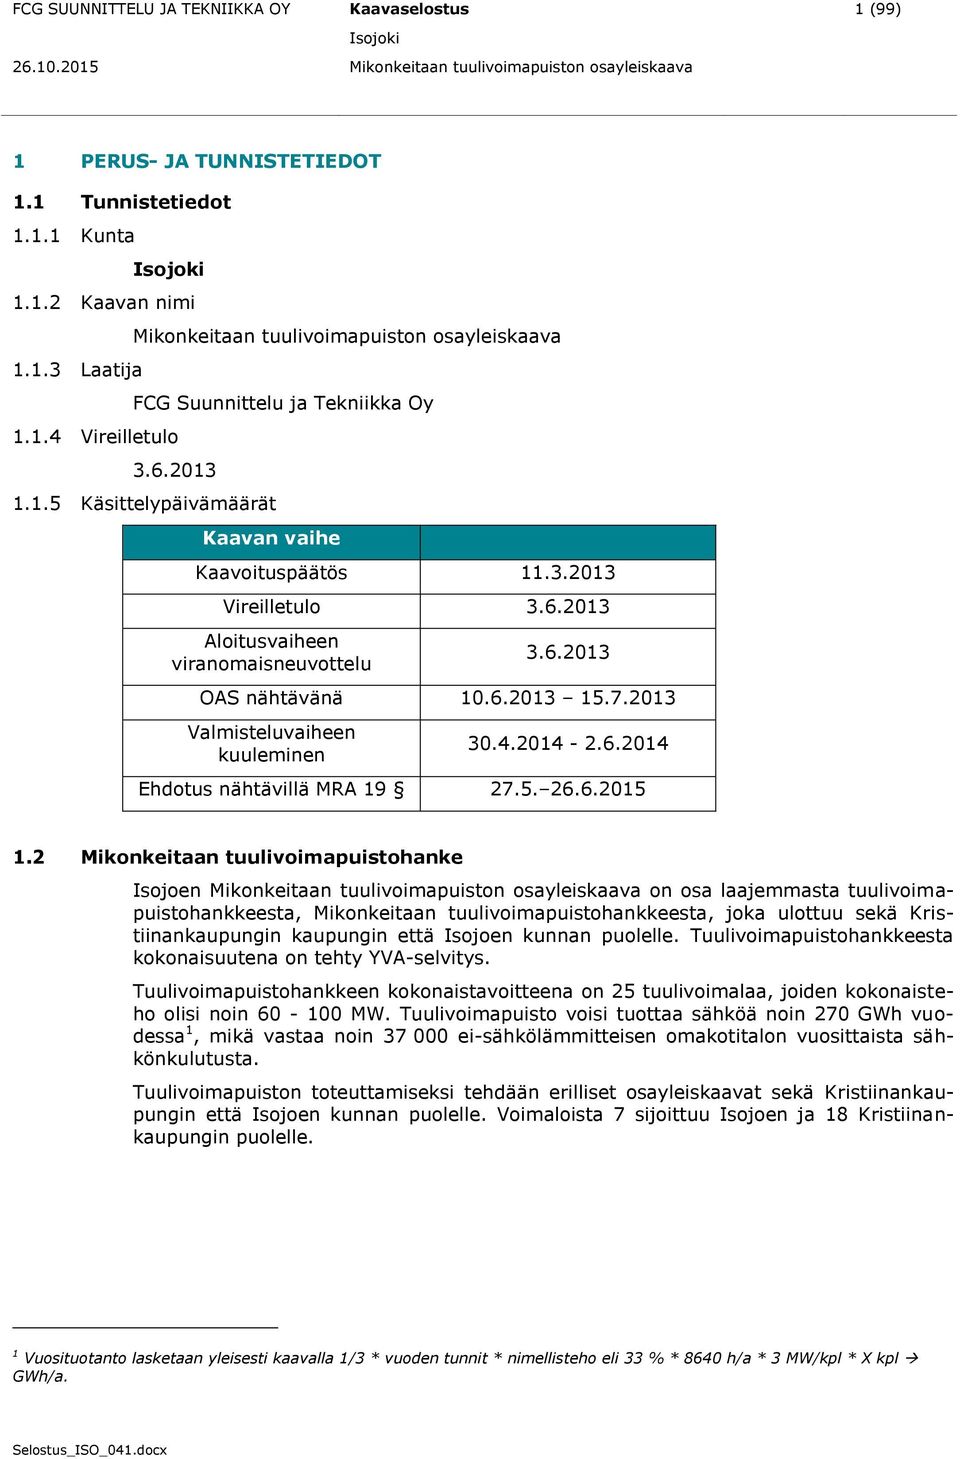 2013 Valmisteluvaiheen kuuleminen 30.4.2014-2.6.2014 Ehdotus nähtävillä MRA 19 27.5. 26.6.2015 1.